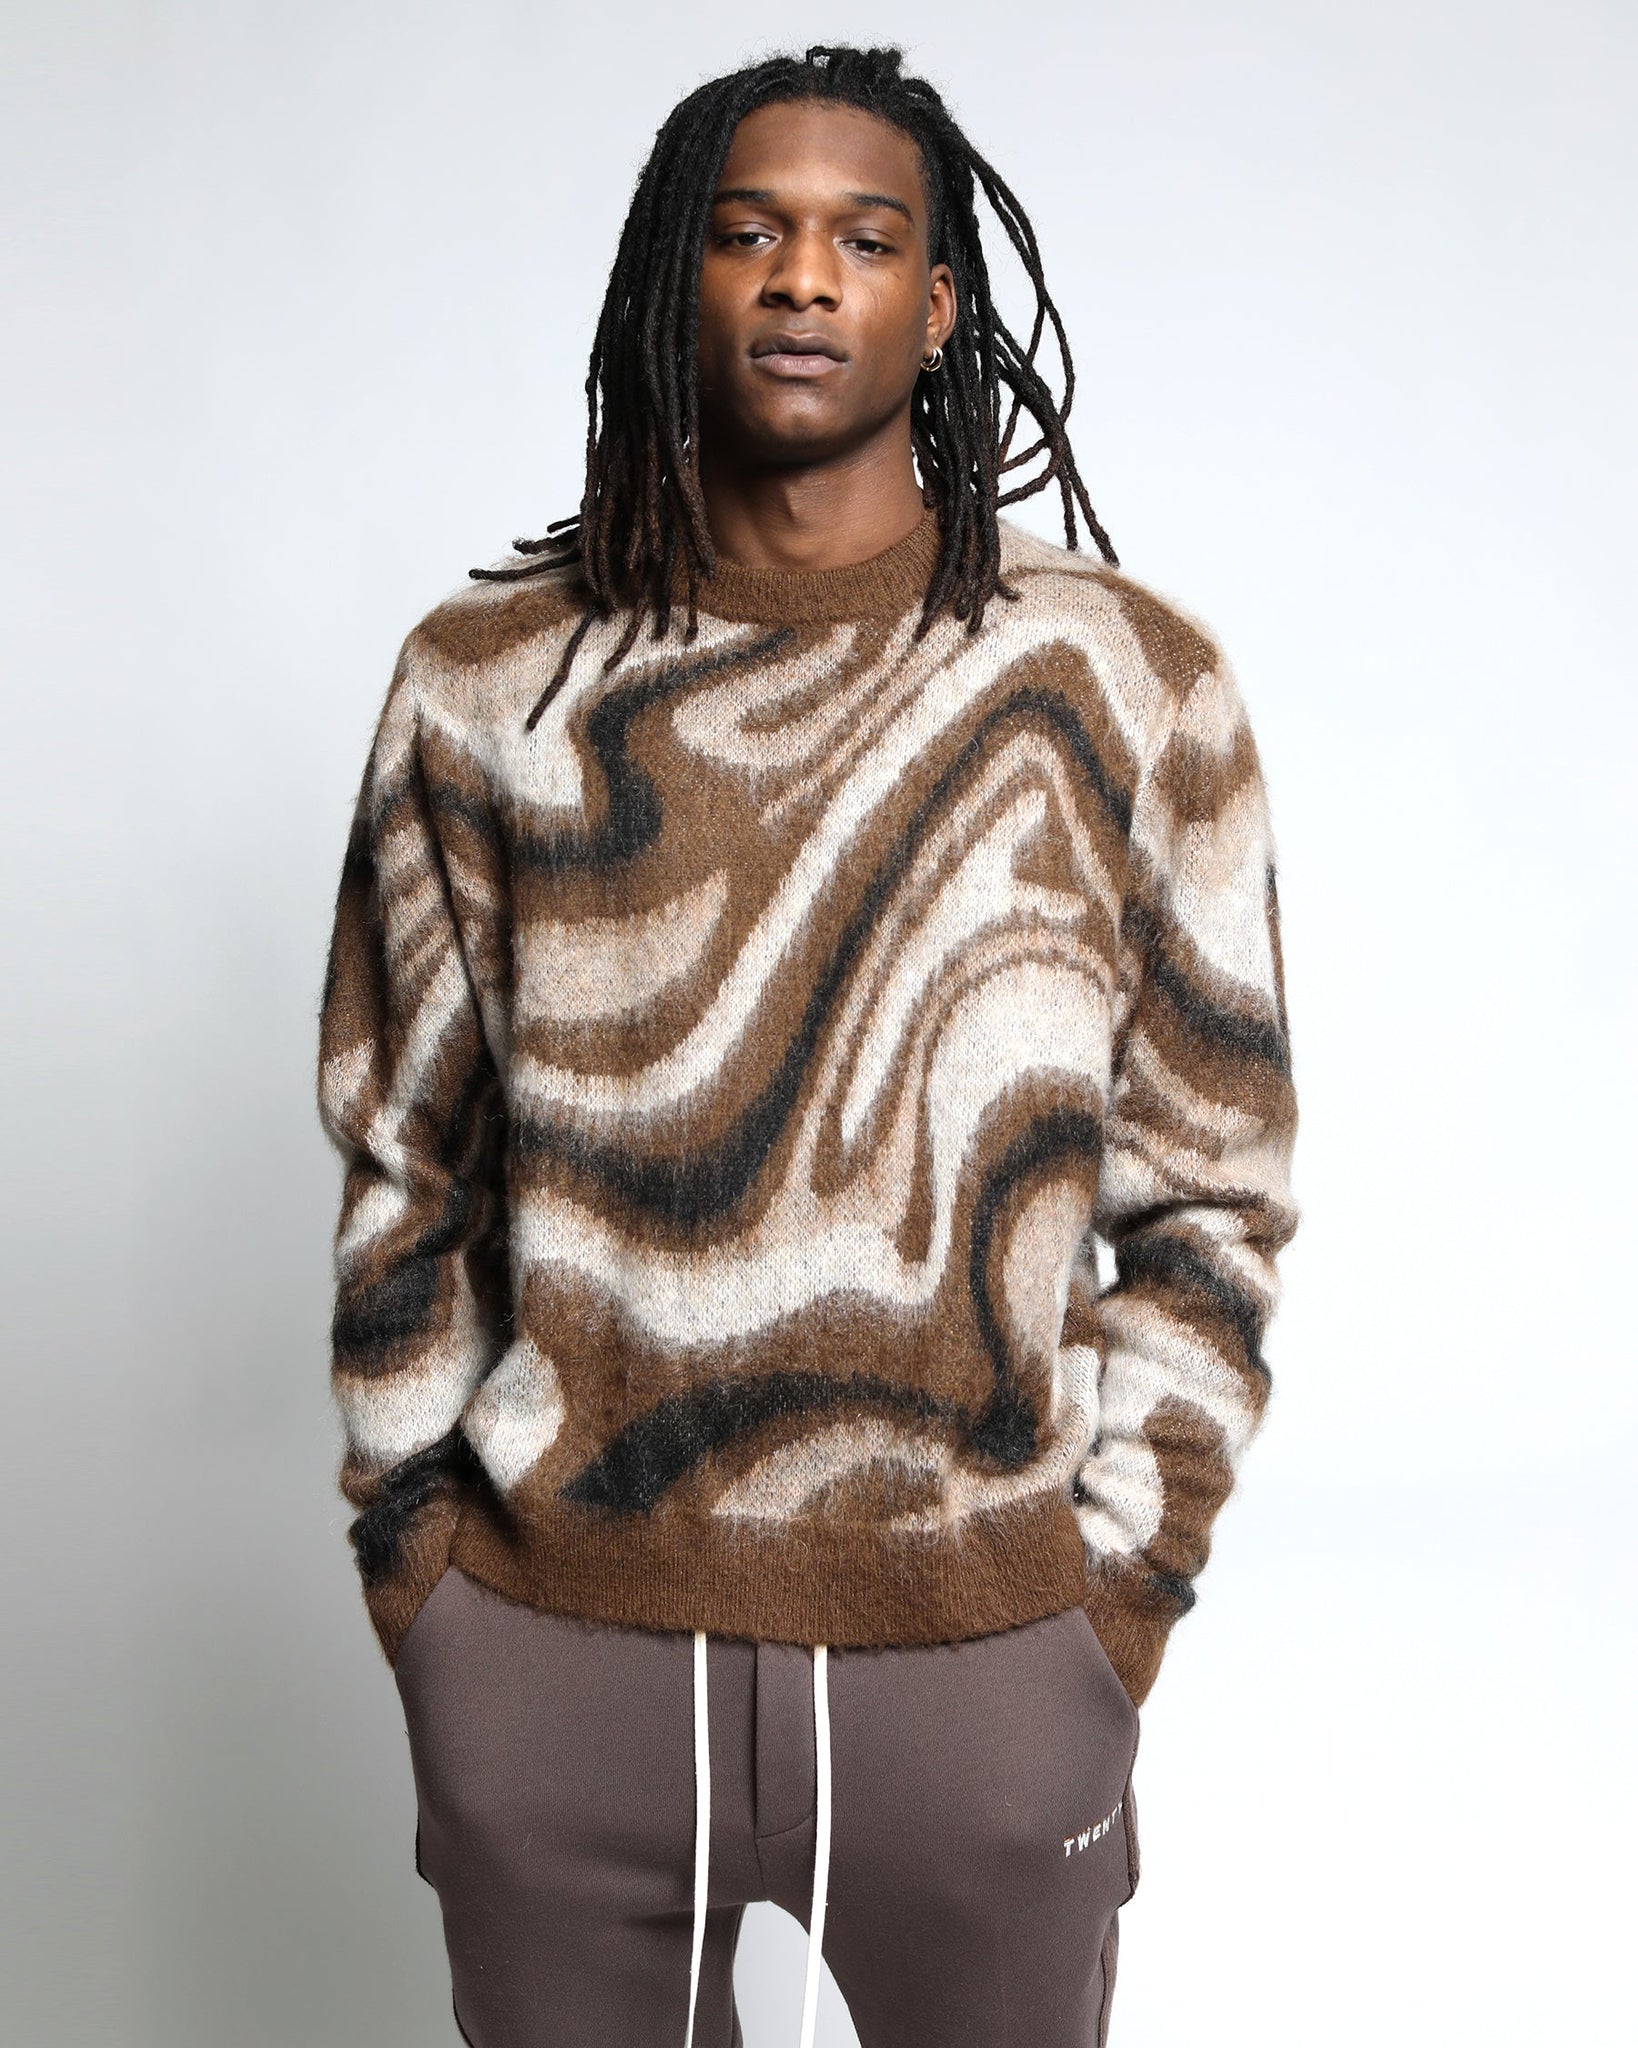 Spectrum Swirl Mohair Sweater Pullover - twentytees